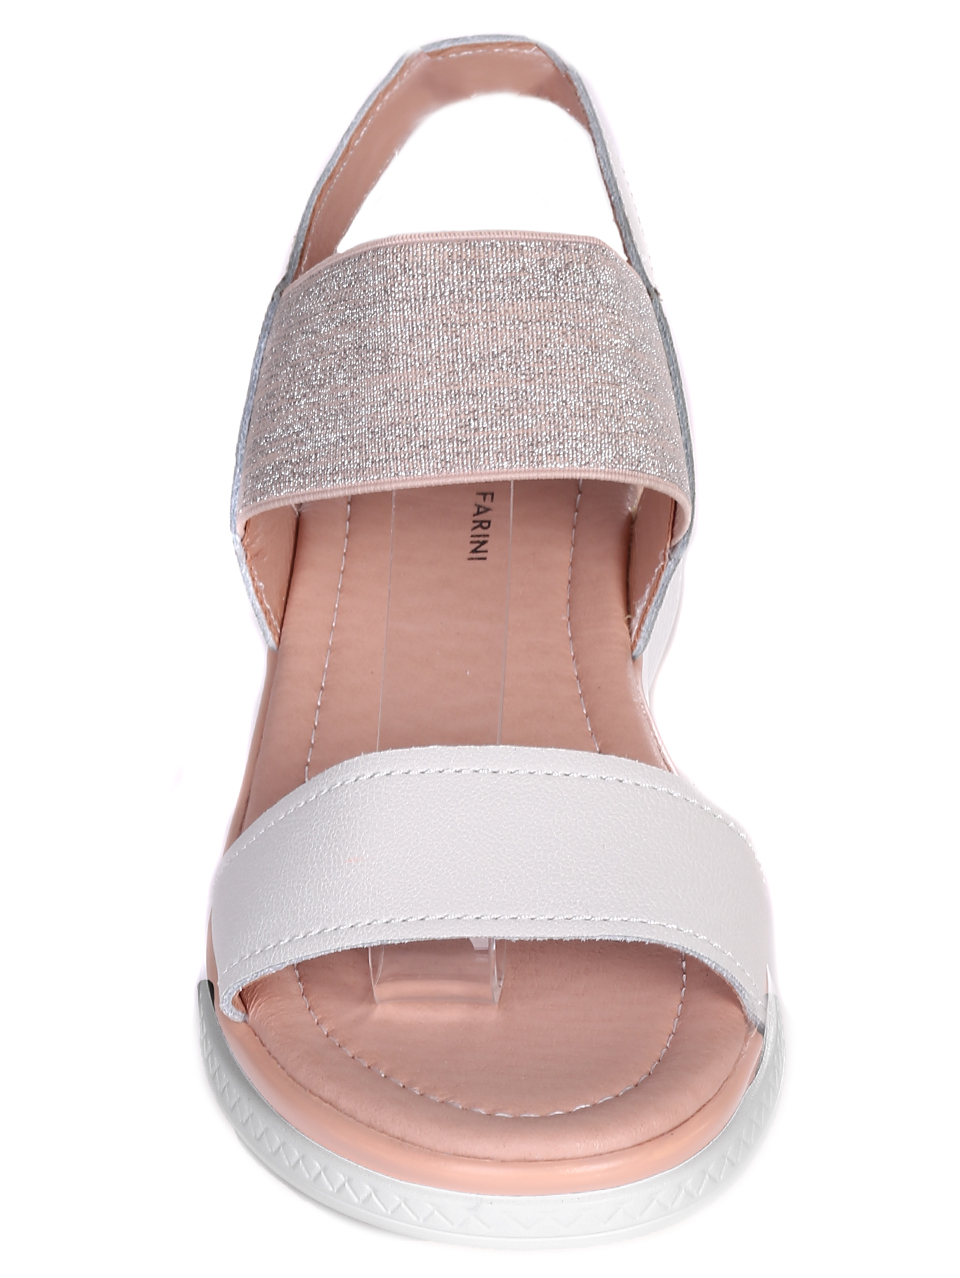 Ежедневни дамски сандали от естествена кожа 4AF-23149 white/beige